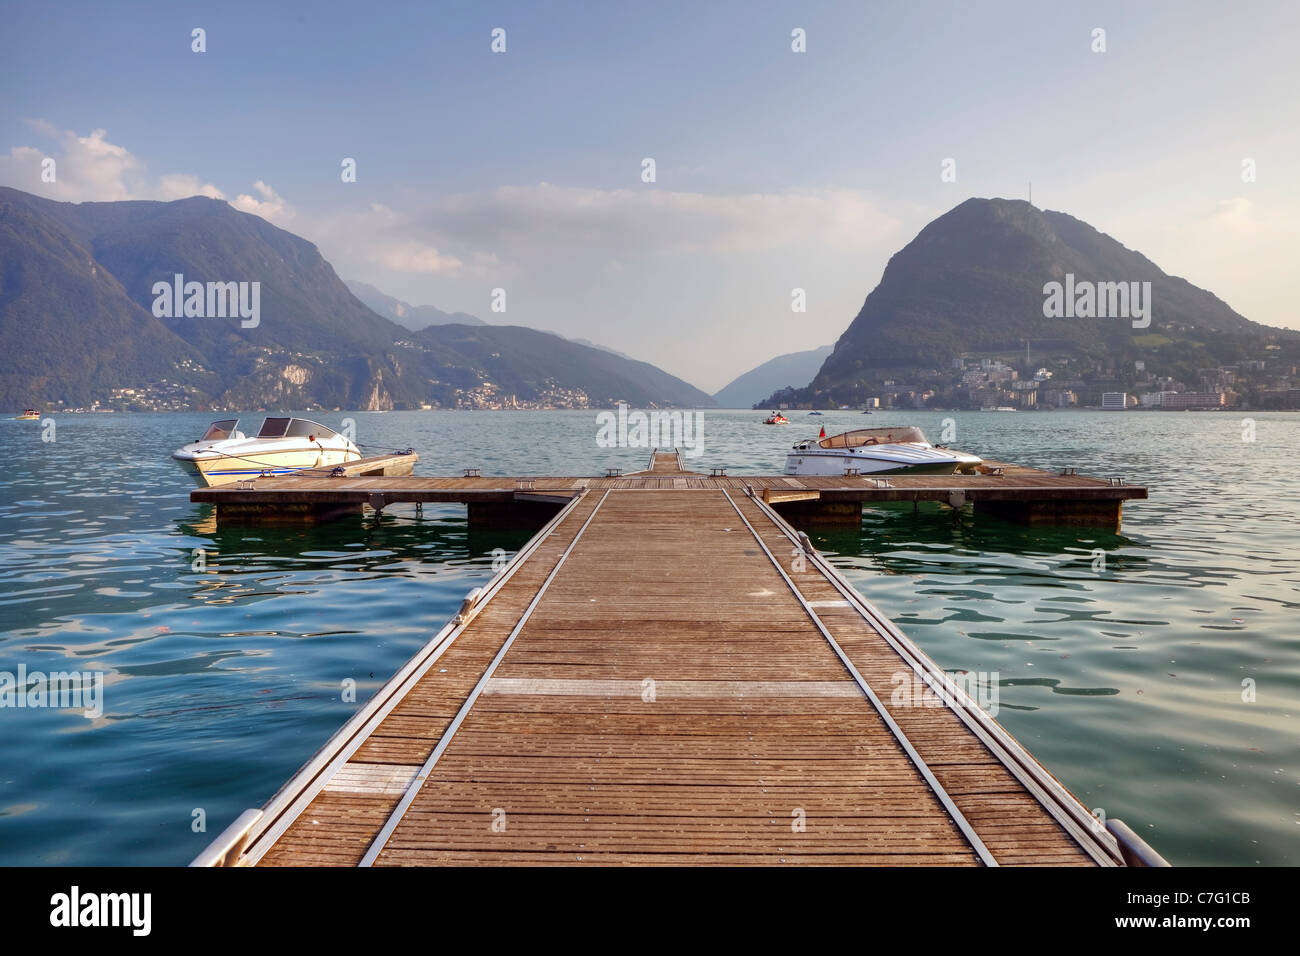 Un impresionante embarcadero en el lago de Lugano, con vistas al Monte Salvatore Foto de stock